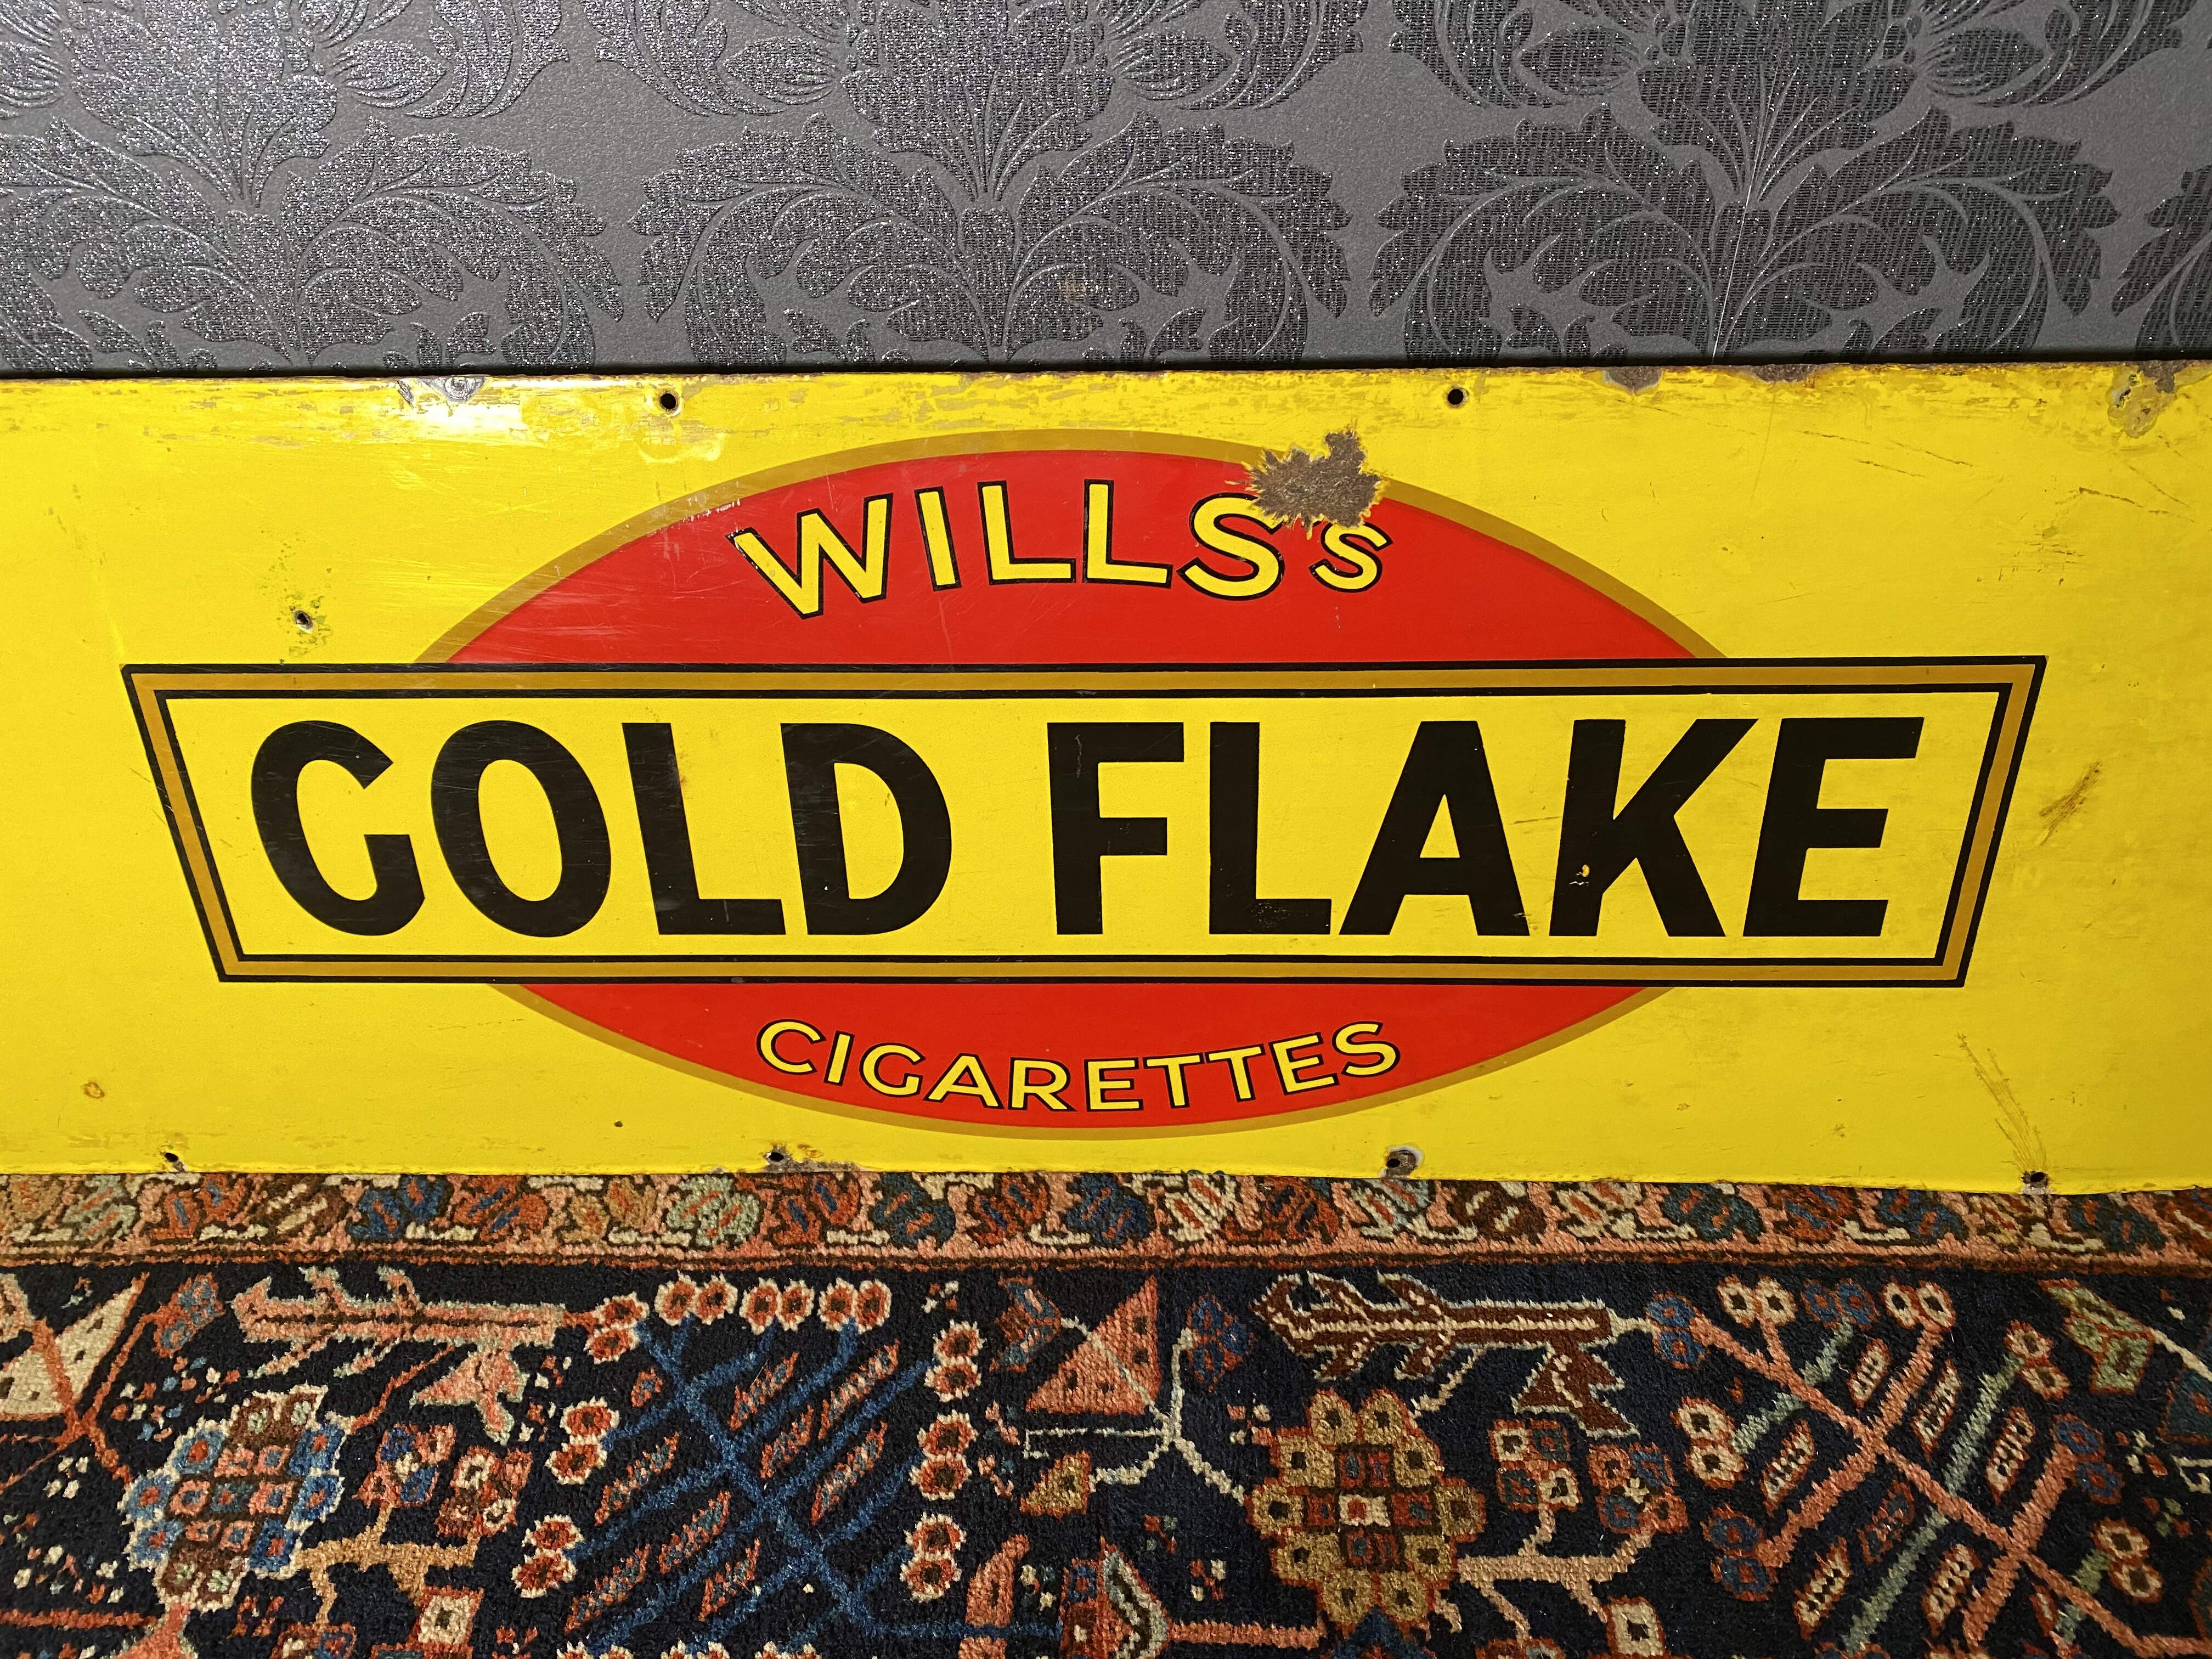 Emailschild Gold Flake Cigarettes um 1940